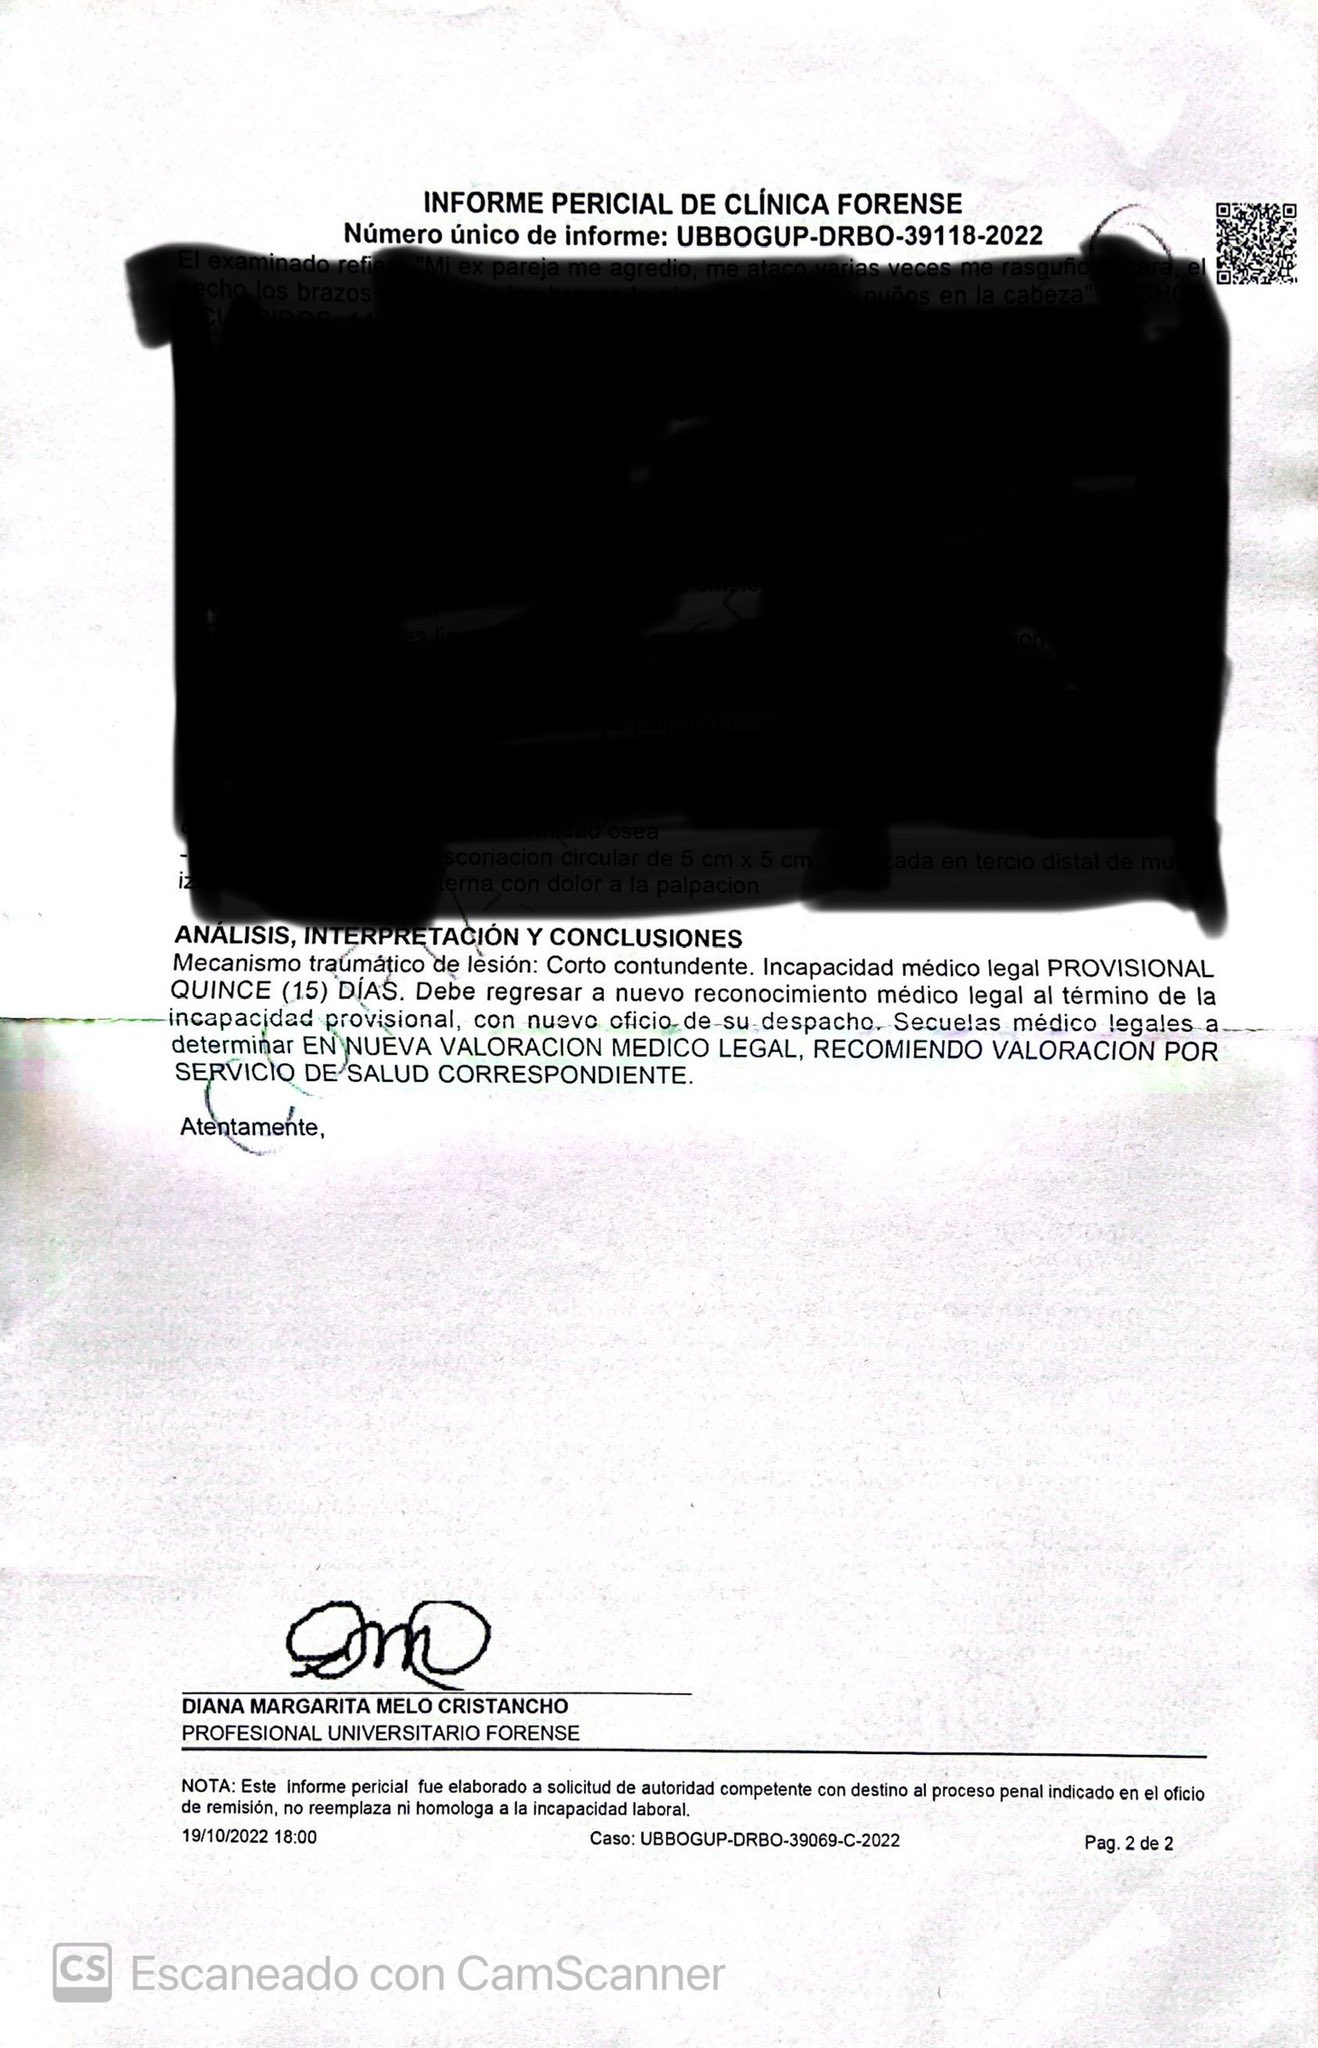 Imagen del documento de Medicina Legal  que publicó Juan Fernando Barona. Imagen: Captura de pantalla